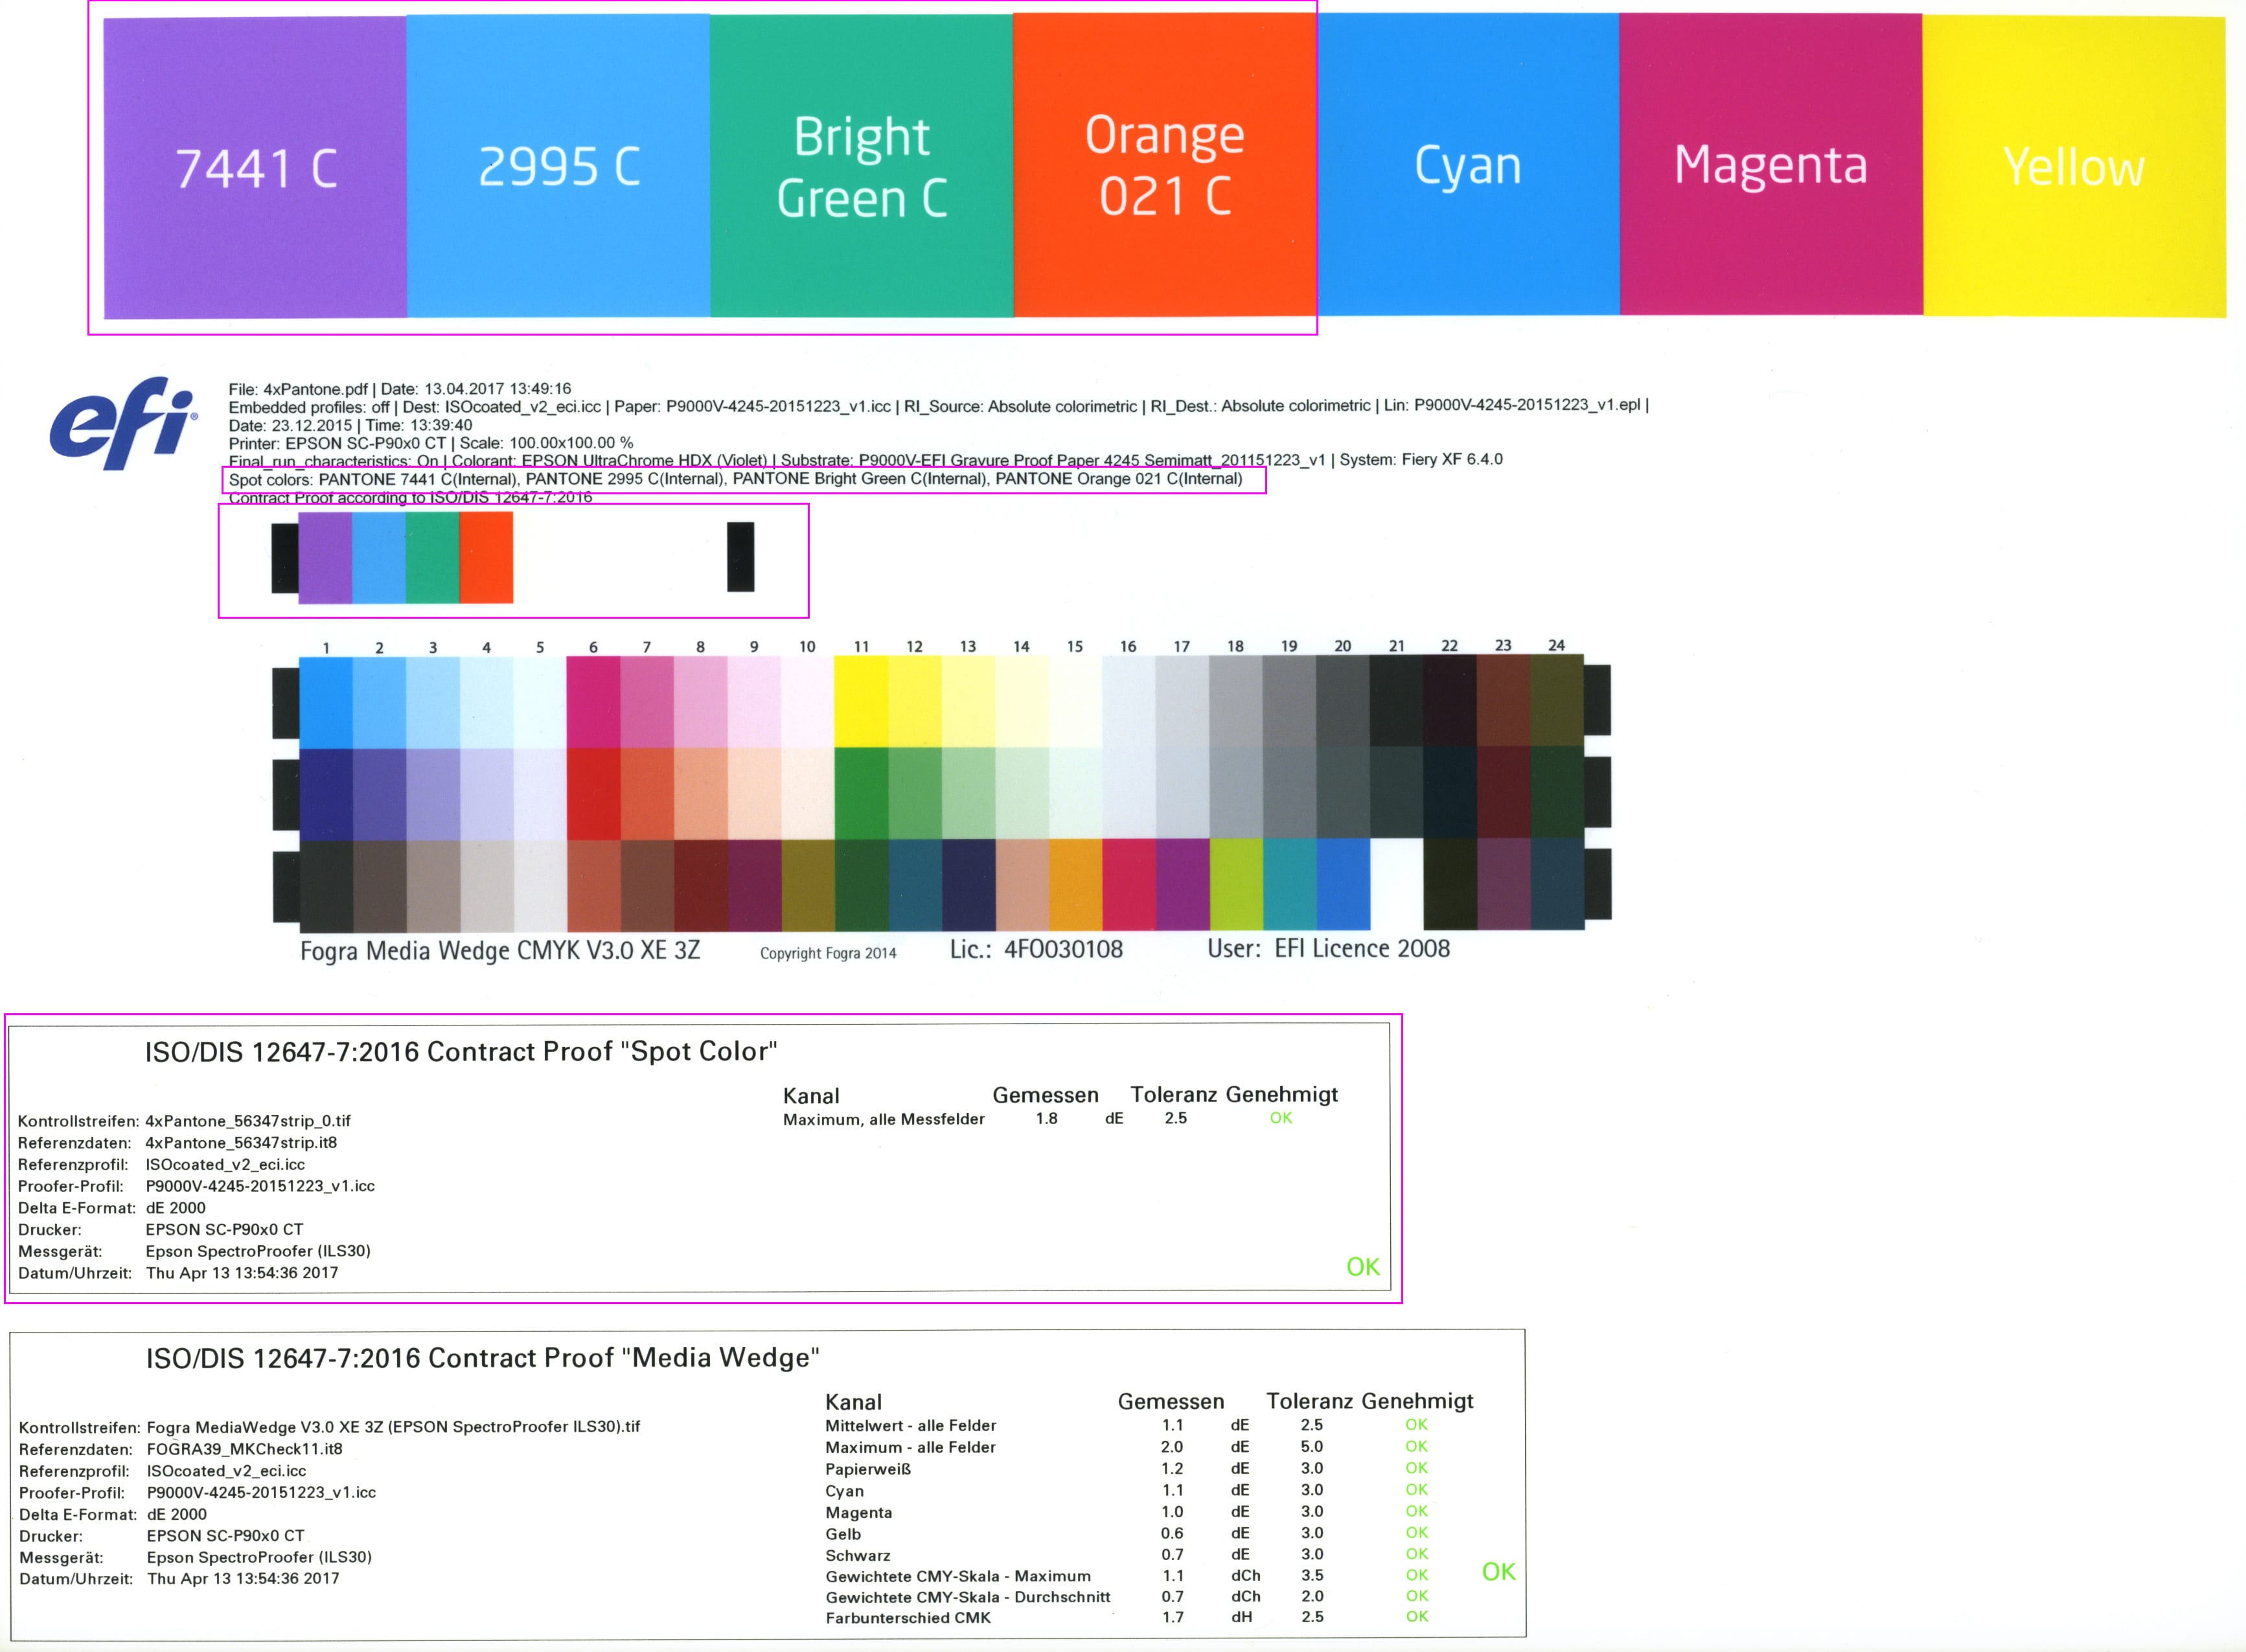 proof.de: Spotcolor mediawedge / spotcolor mediawedge med evaluering i henhold til ISO/DIS 12647-7:2016